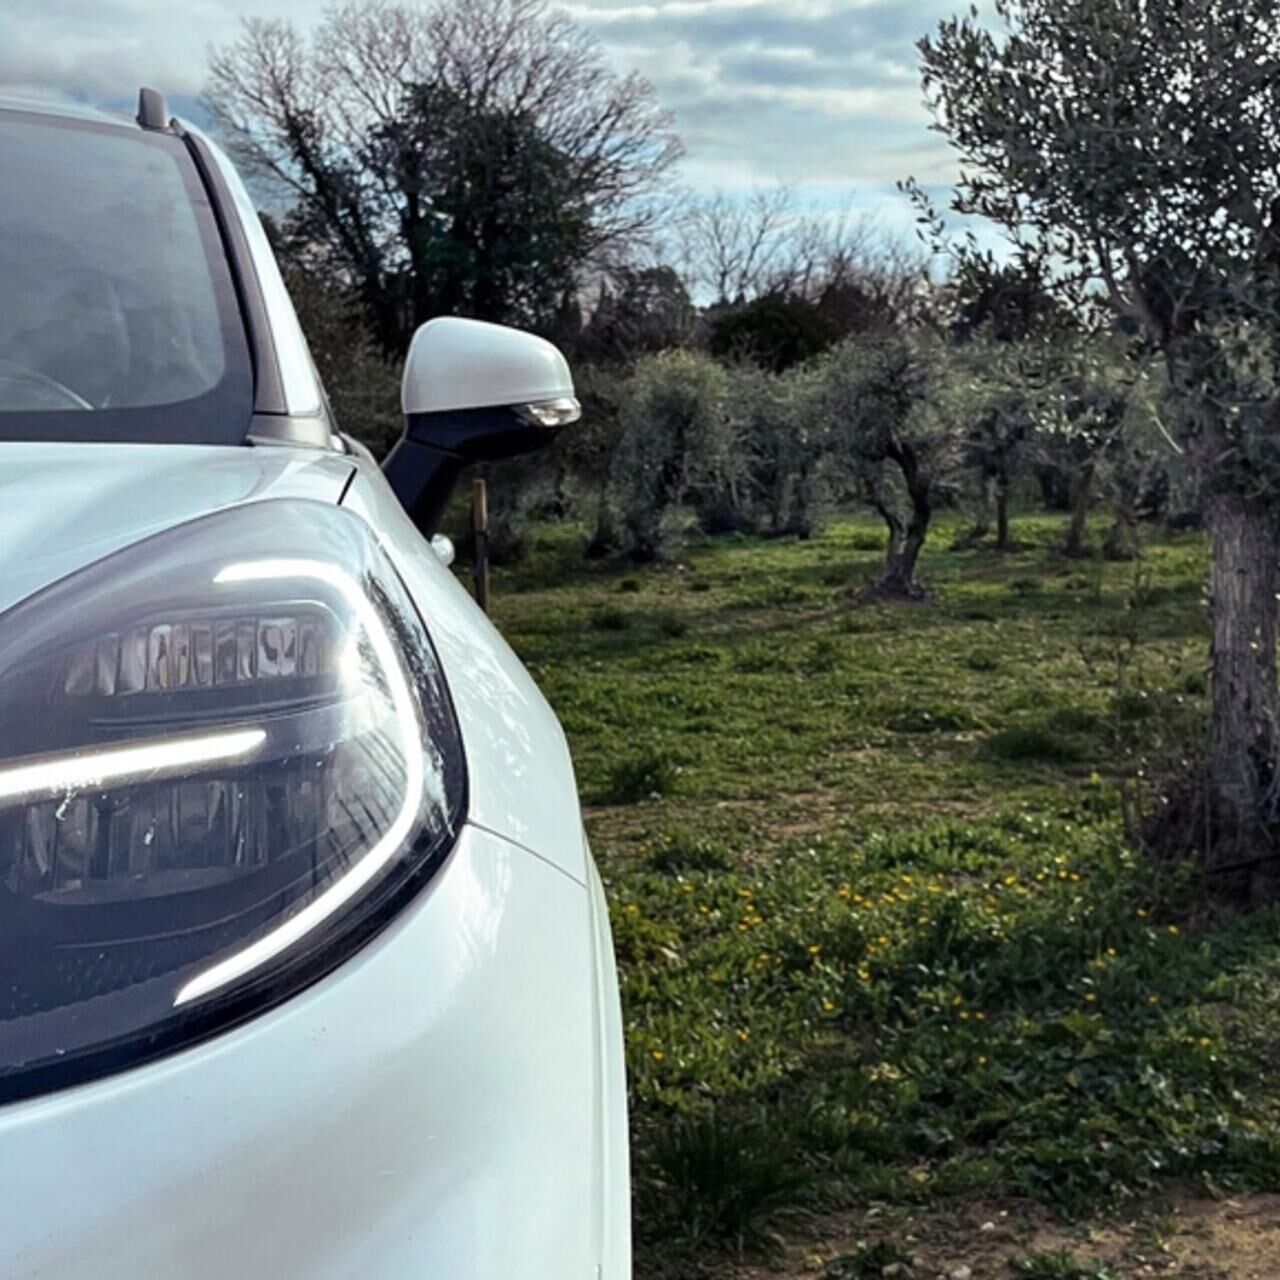 Olives: vozidlo Ford vedle olivovníku: budoucnost je v biokompozitních materiálech